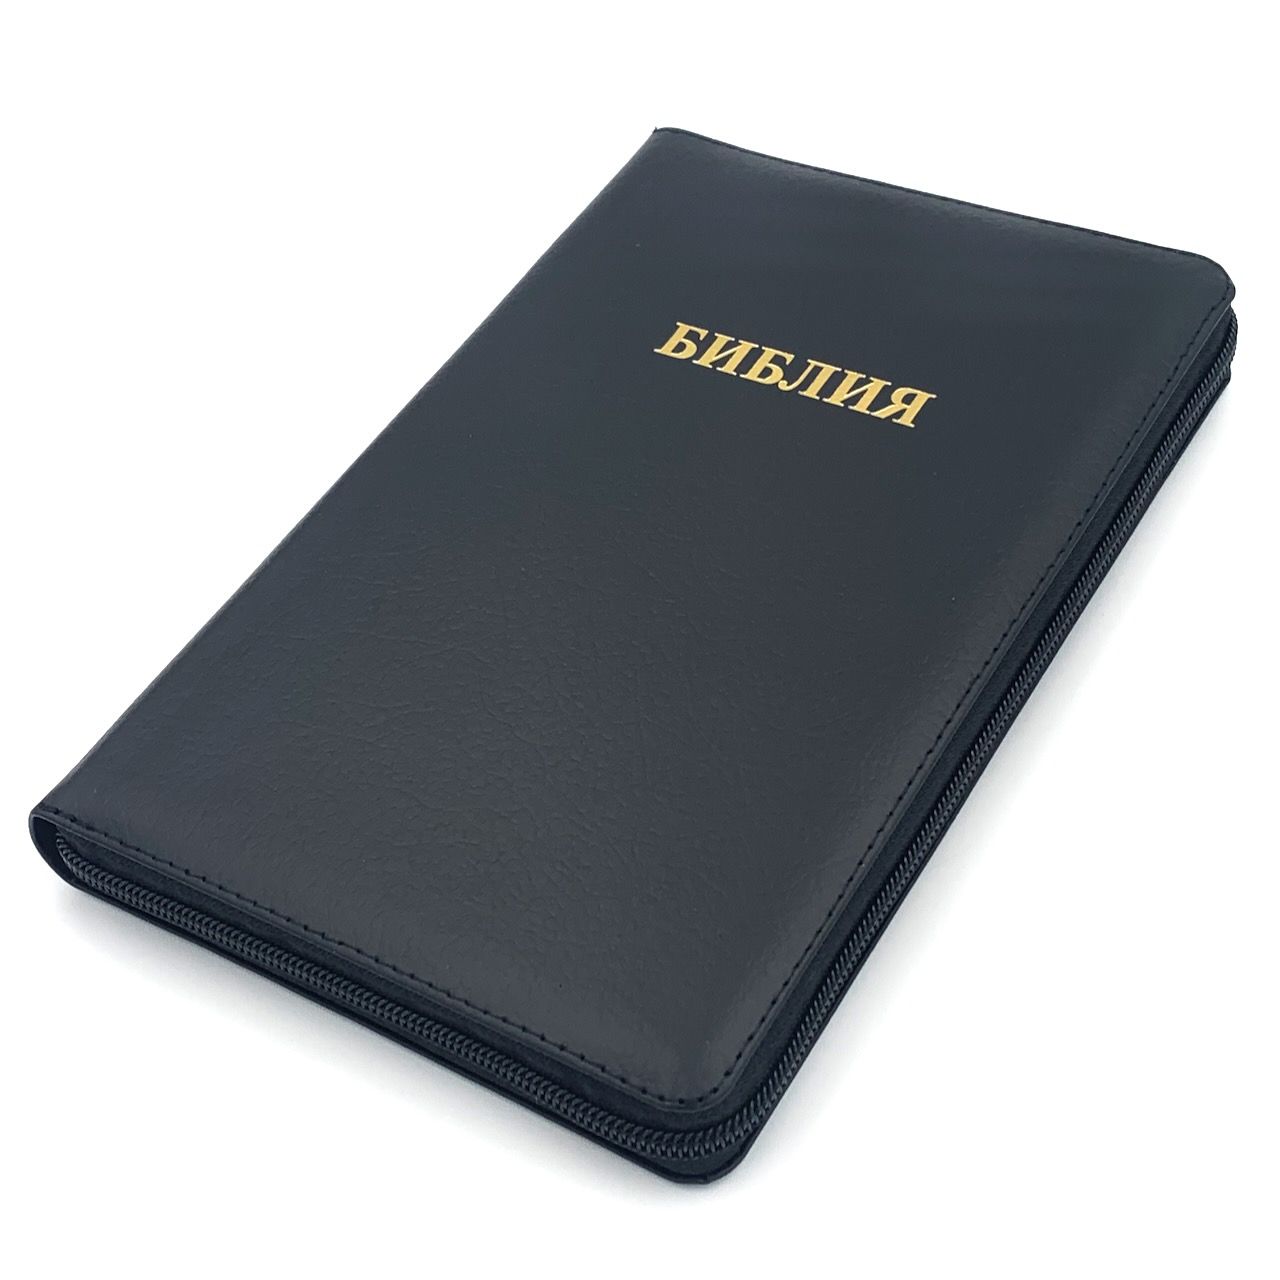 Библия 055zti код 23055-27 надпись "Библия", кожаный переплет на молнии с индексами, цвет черный пятнистый, средний формат, 143*220 мм